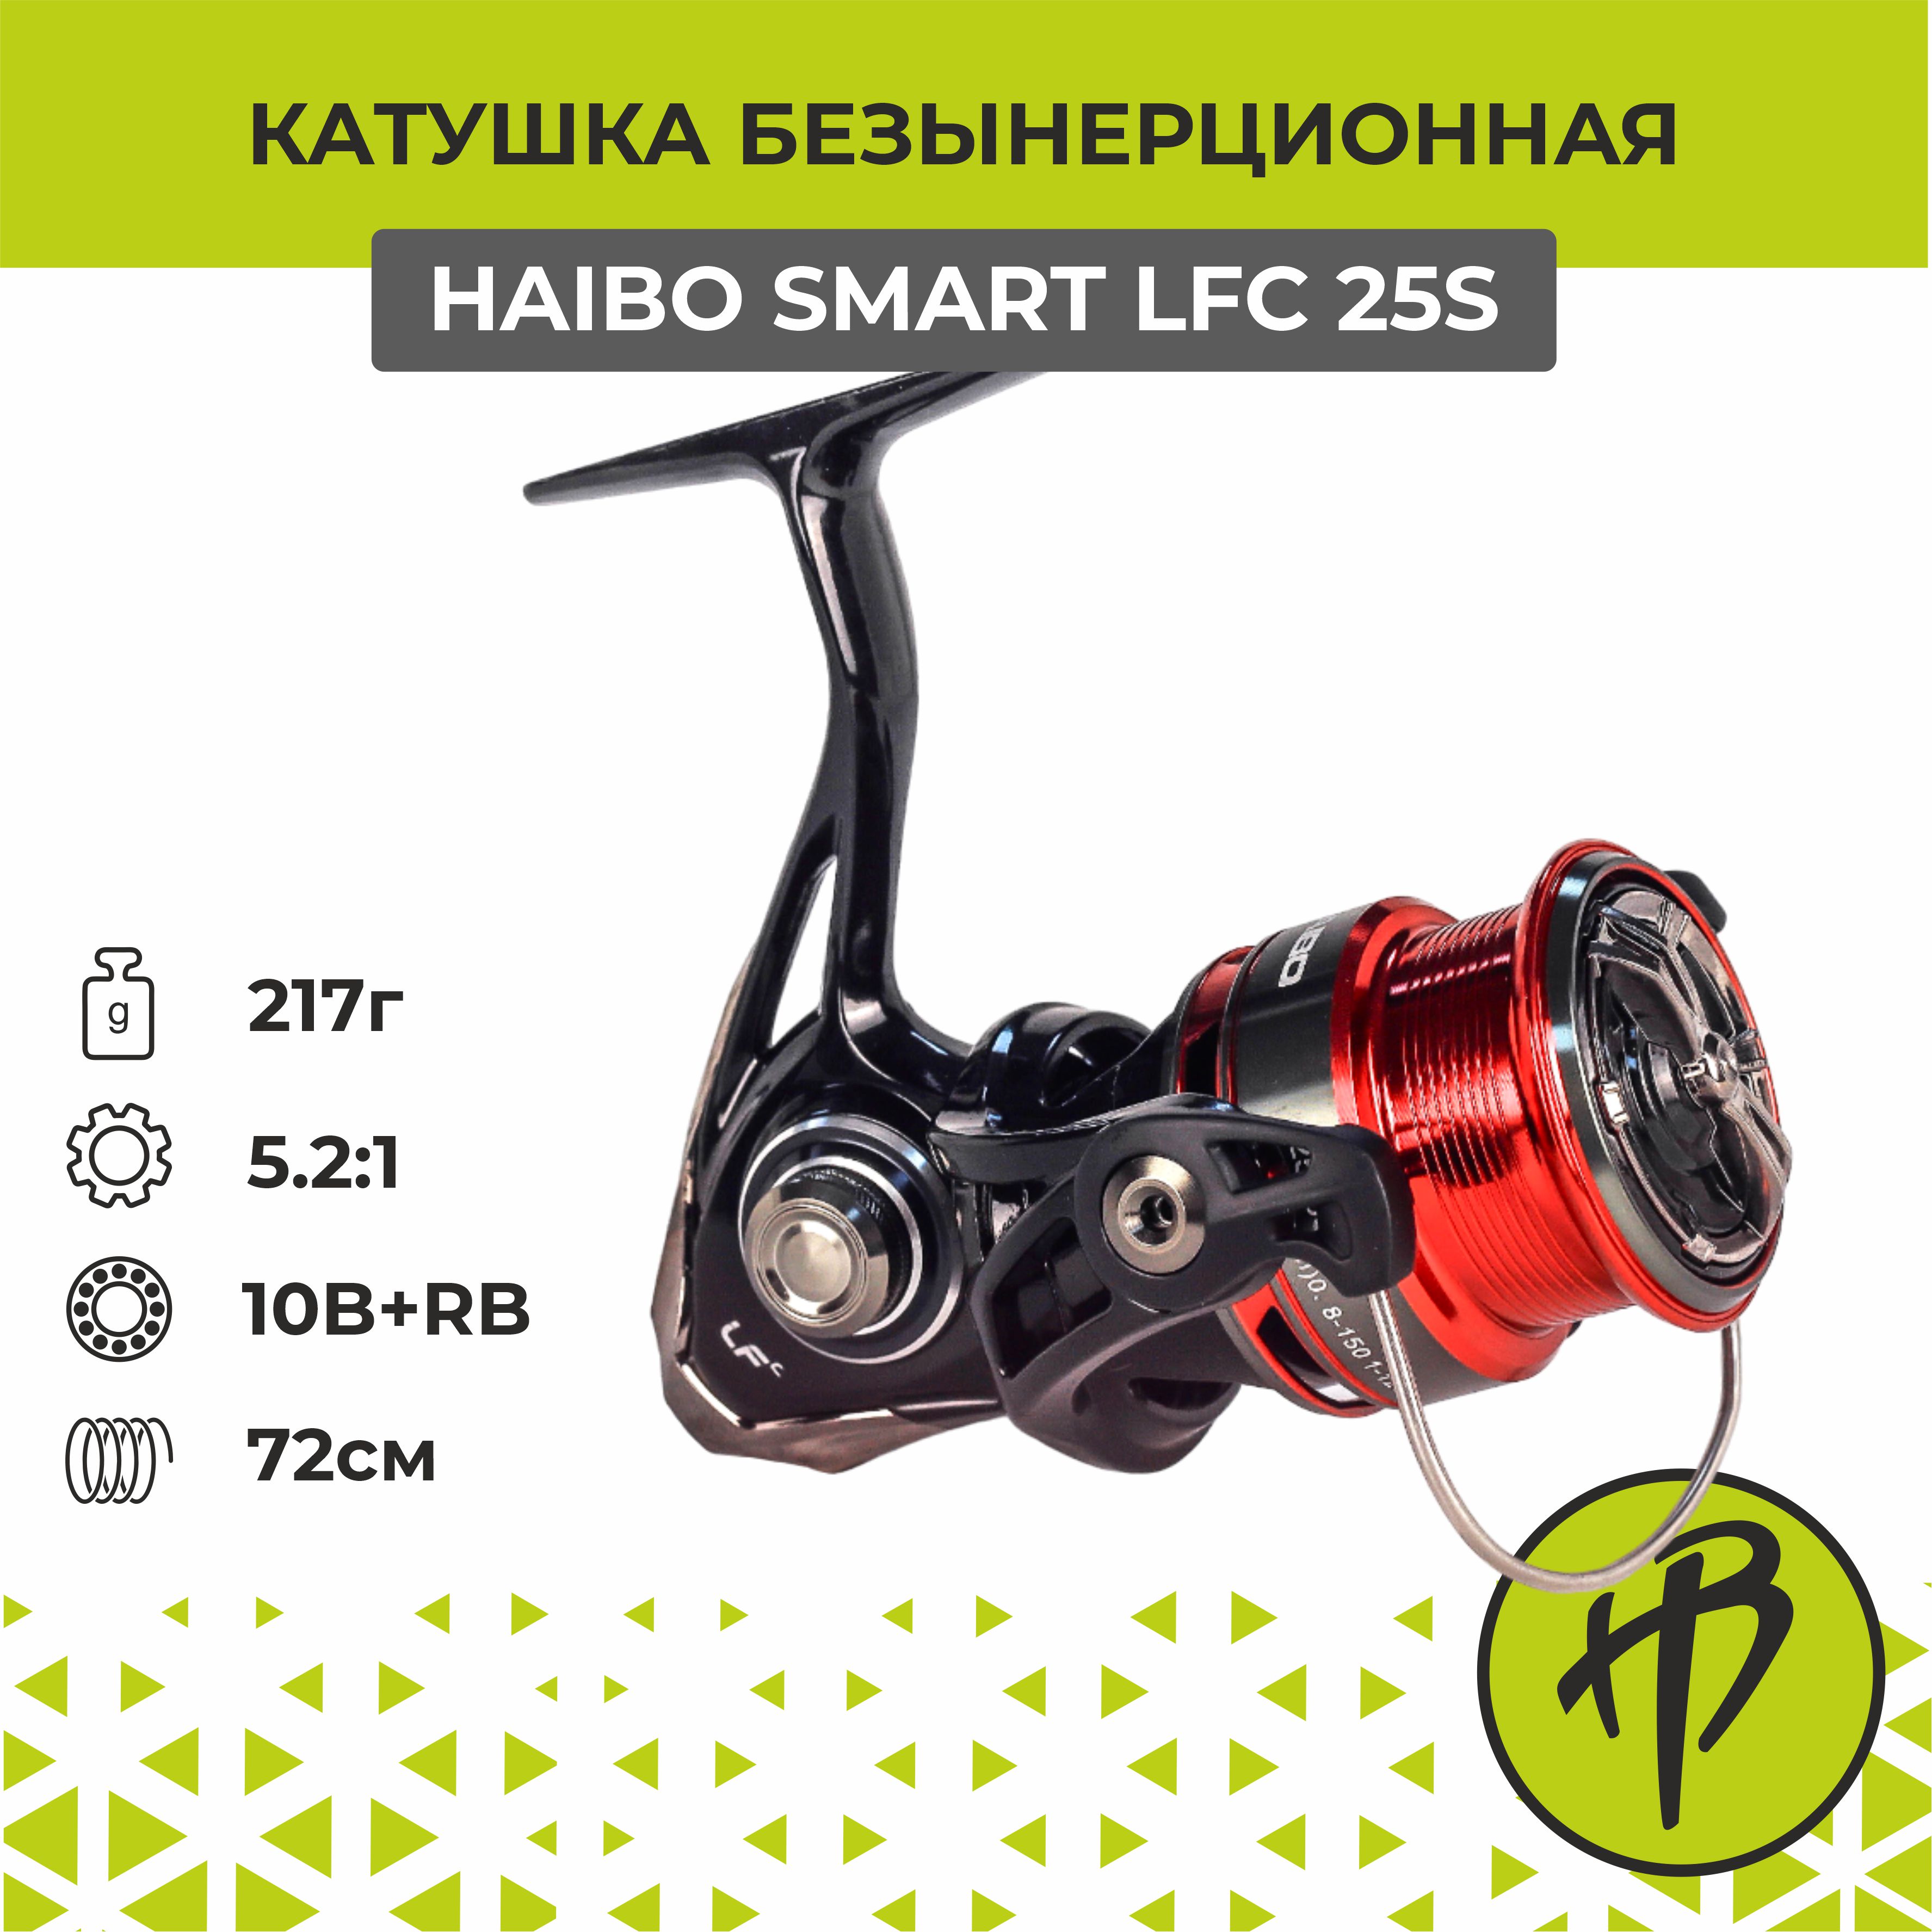 Катушка для спиннинга безынерционная Haibo Smart LFC 25S, правая/левая рука